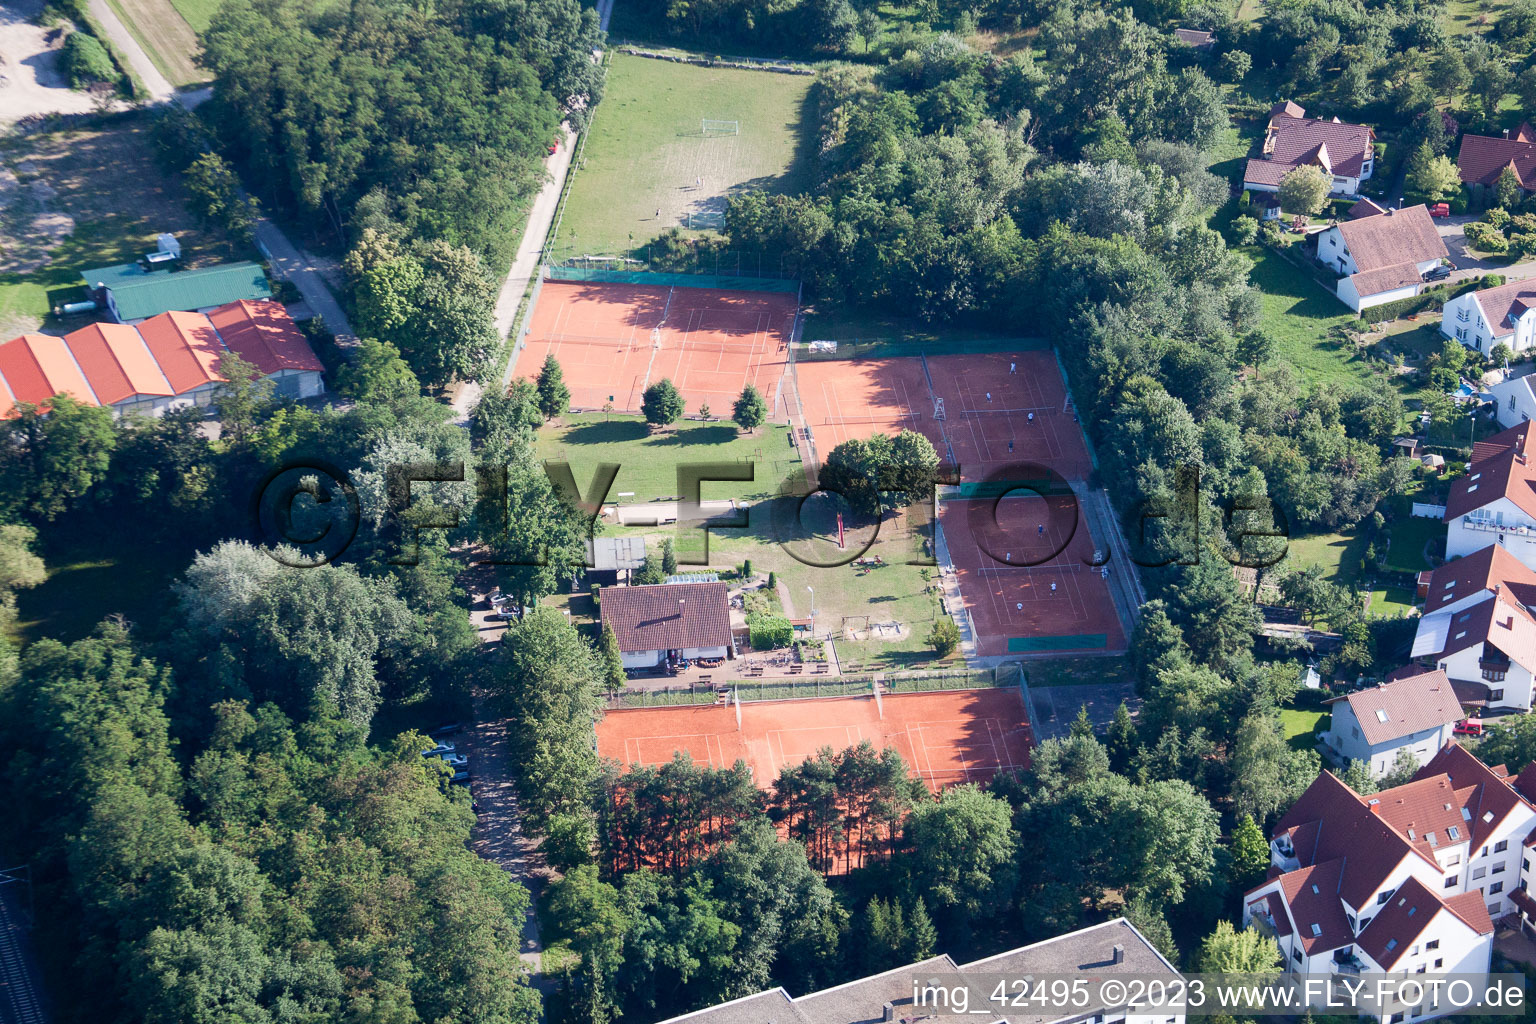 Vue aérienne de Tennis à Jockgrim dans le département Rhénanie-Palatinat, Allemagne